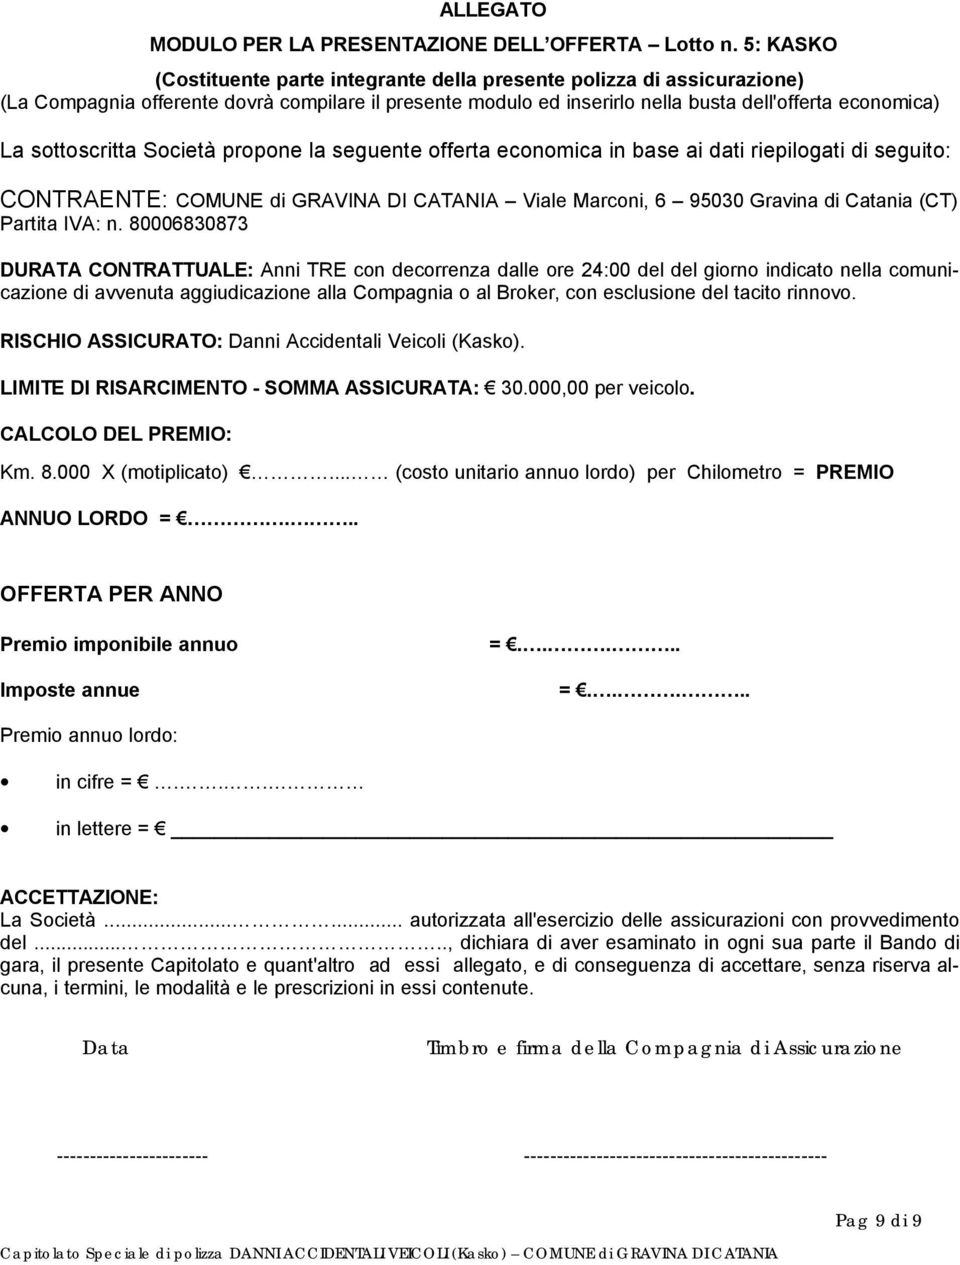 sottoscritta Società propone la seguente offerta economica in base ai dati riepilogati di seguito: CONTRAENTE: COMUNE di GRAVINA DI CATANIA Viale Marconi, 6 95030 Gravina di Catania (CT) Partita IVA: